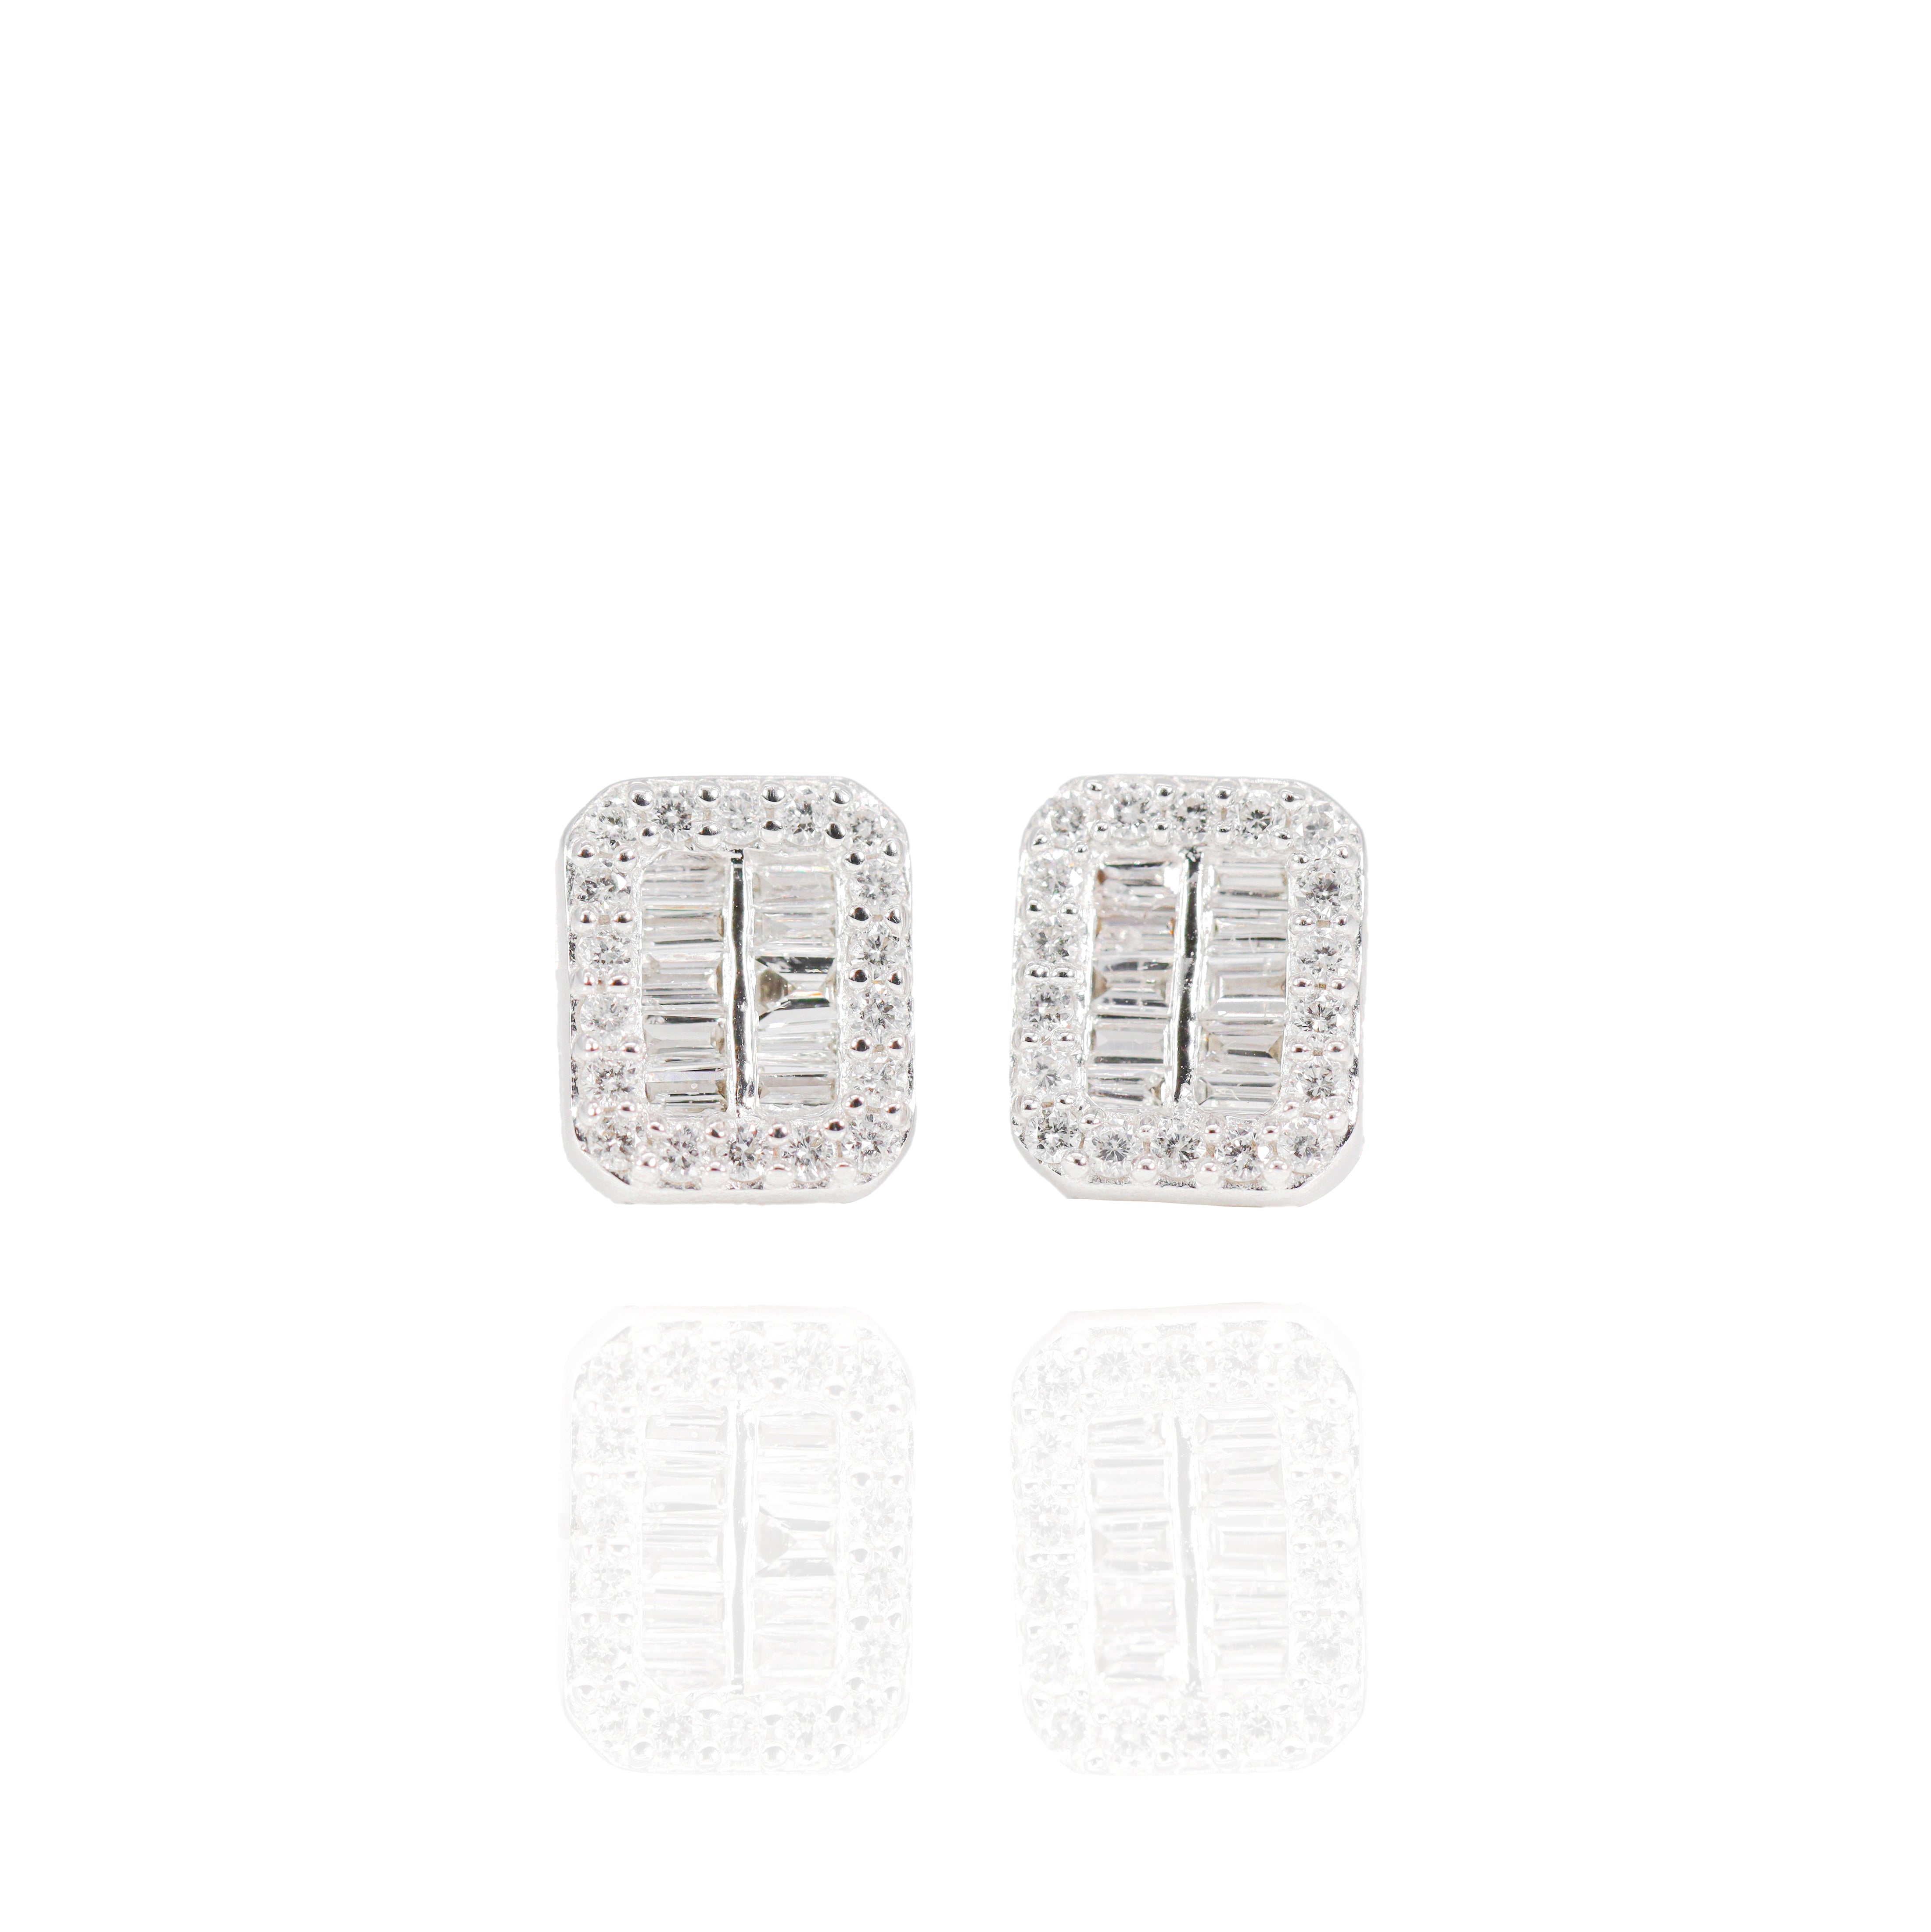 2 Row Baguette Center Diamond Earrings